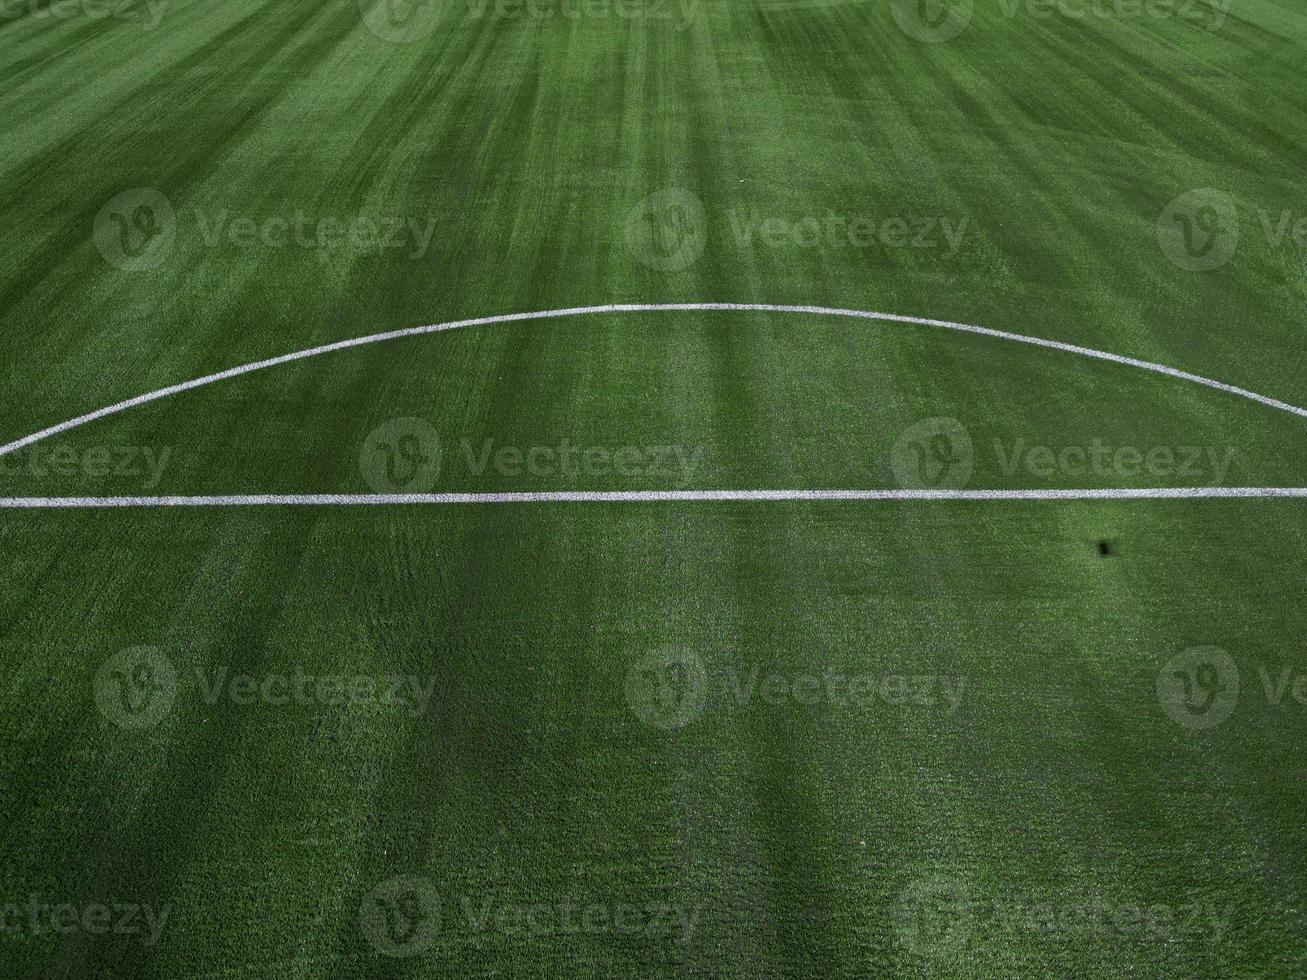 voetbal veld- in de platteland, antenne visie van drone. foto